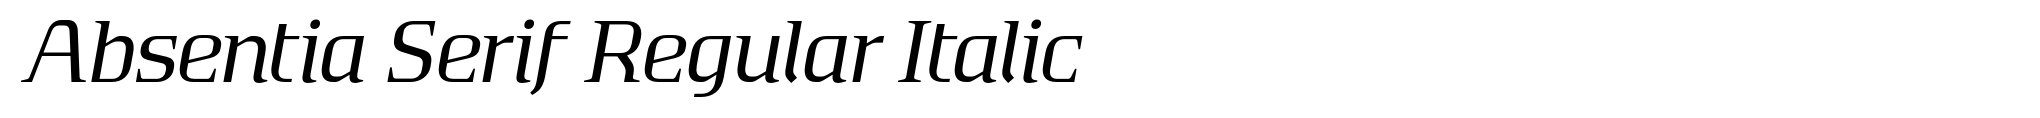 Absentia Serif Regular Italic image